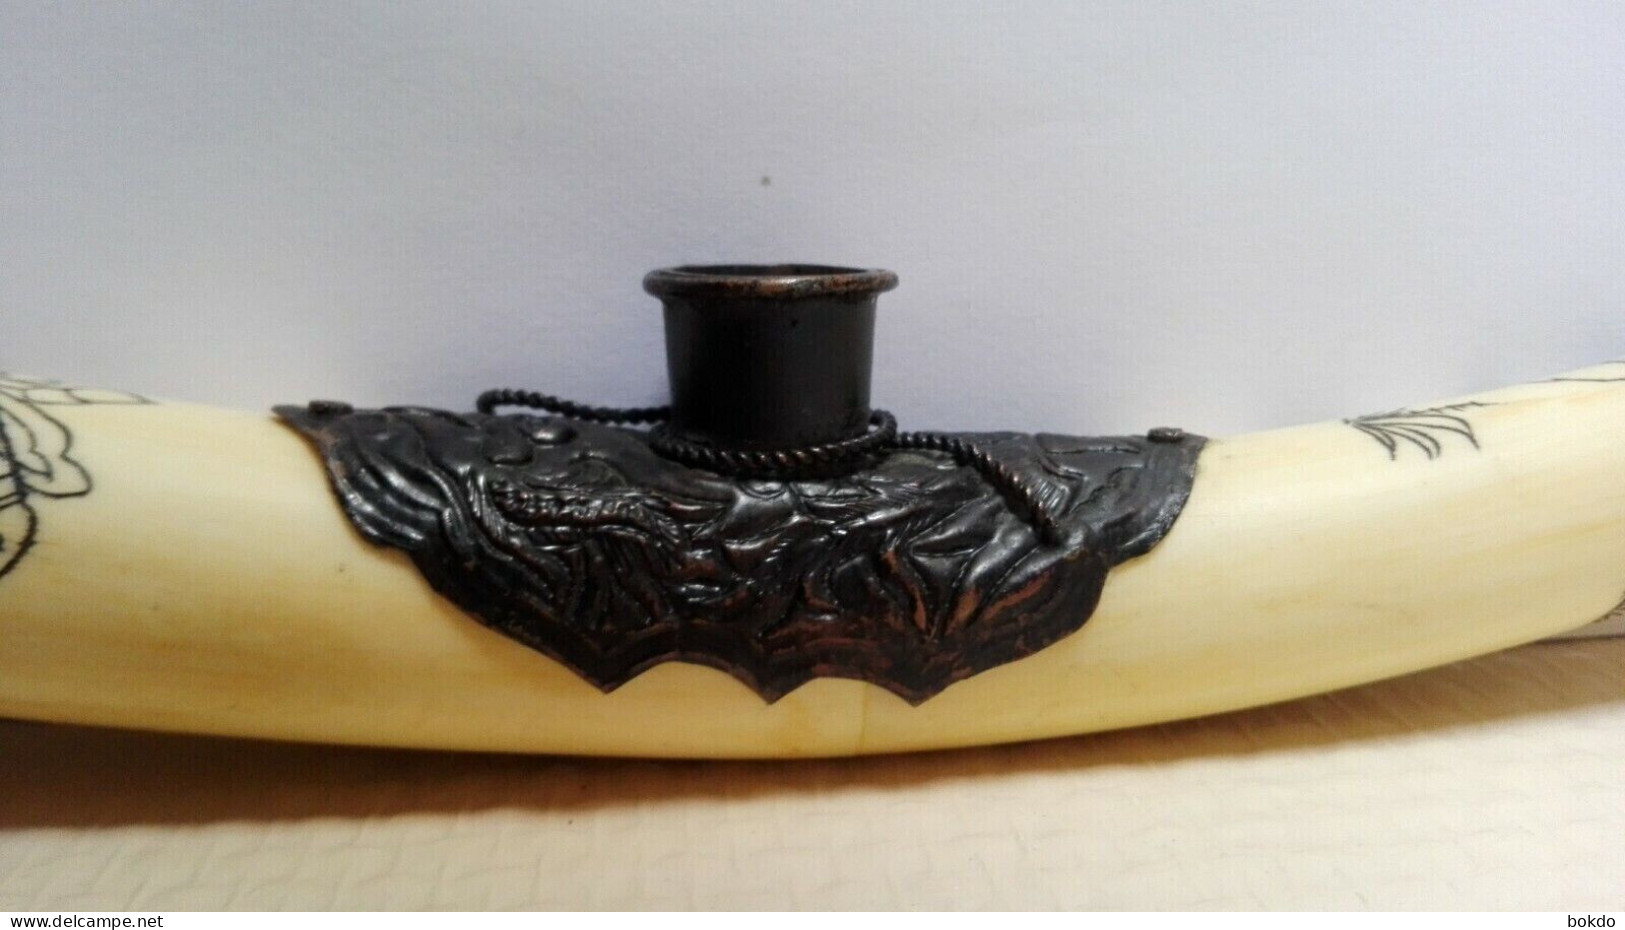 Très jolie ancienne pipe - asiatique - joliment travaillé - 32 cm